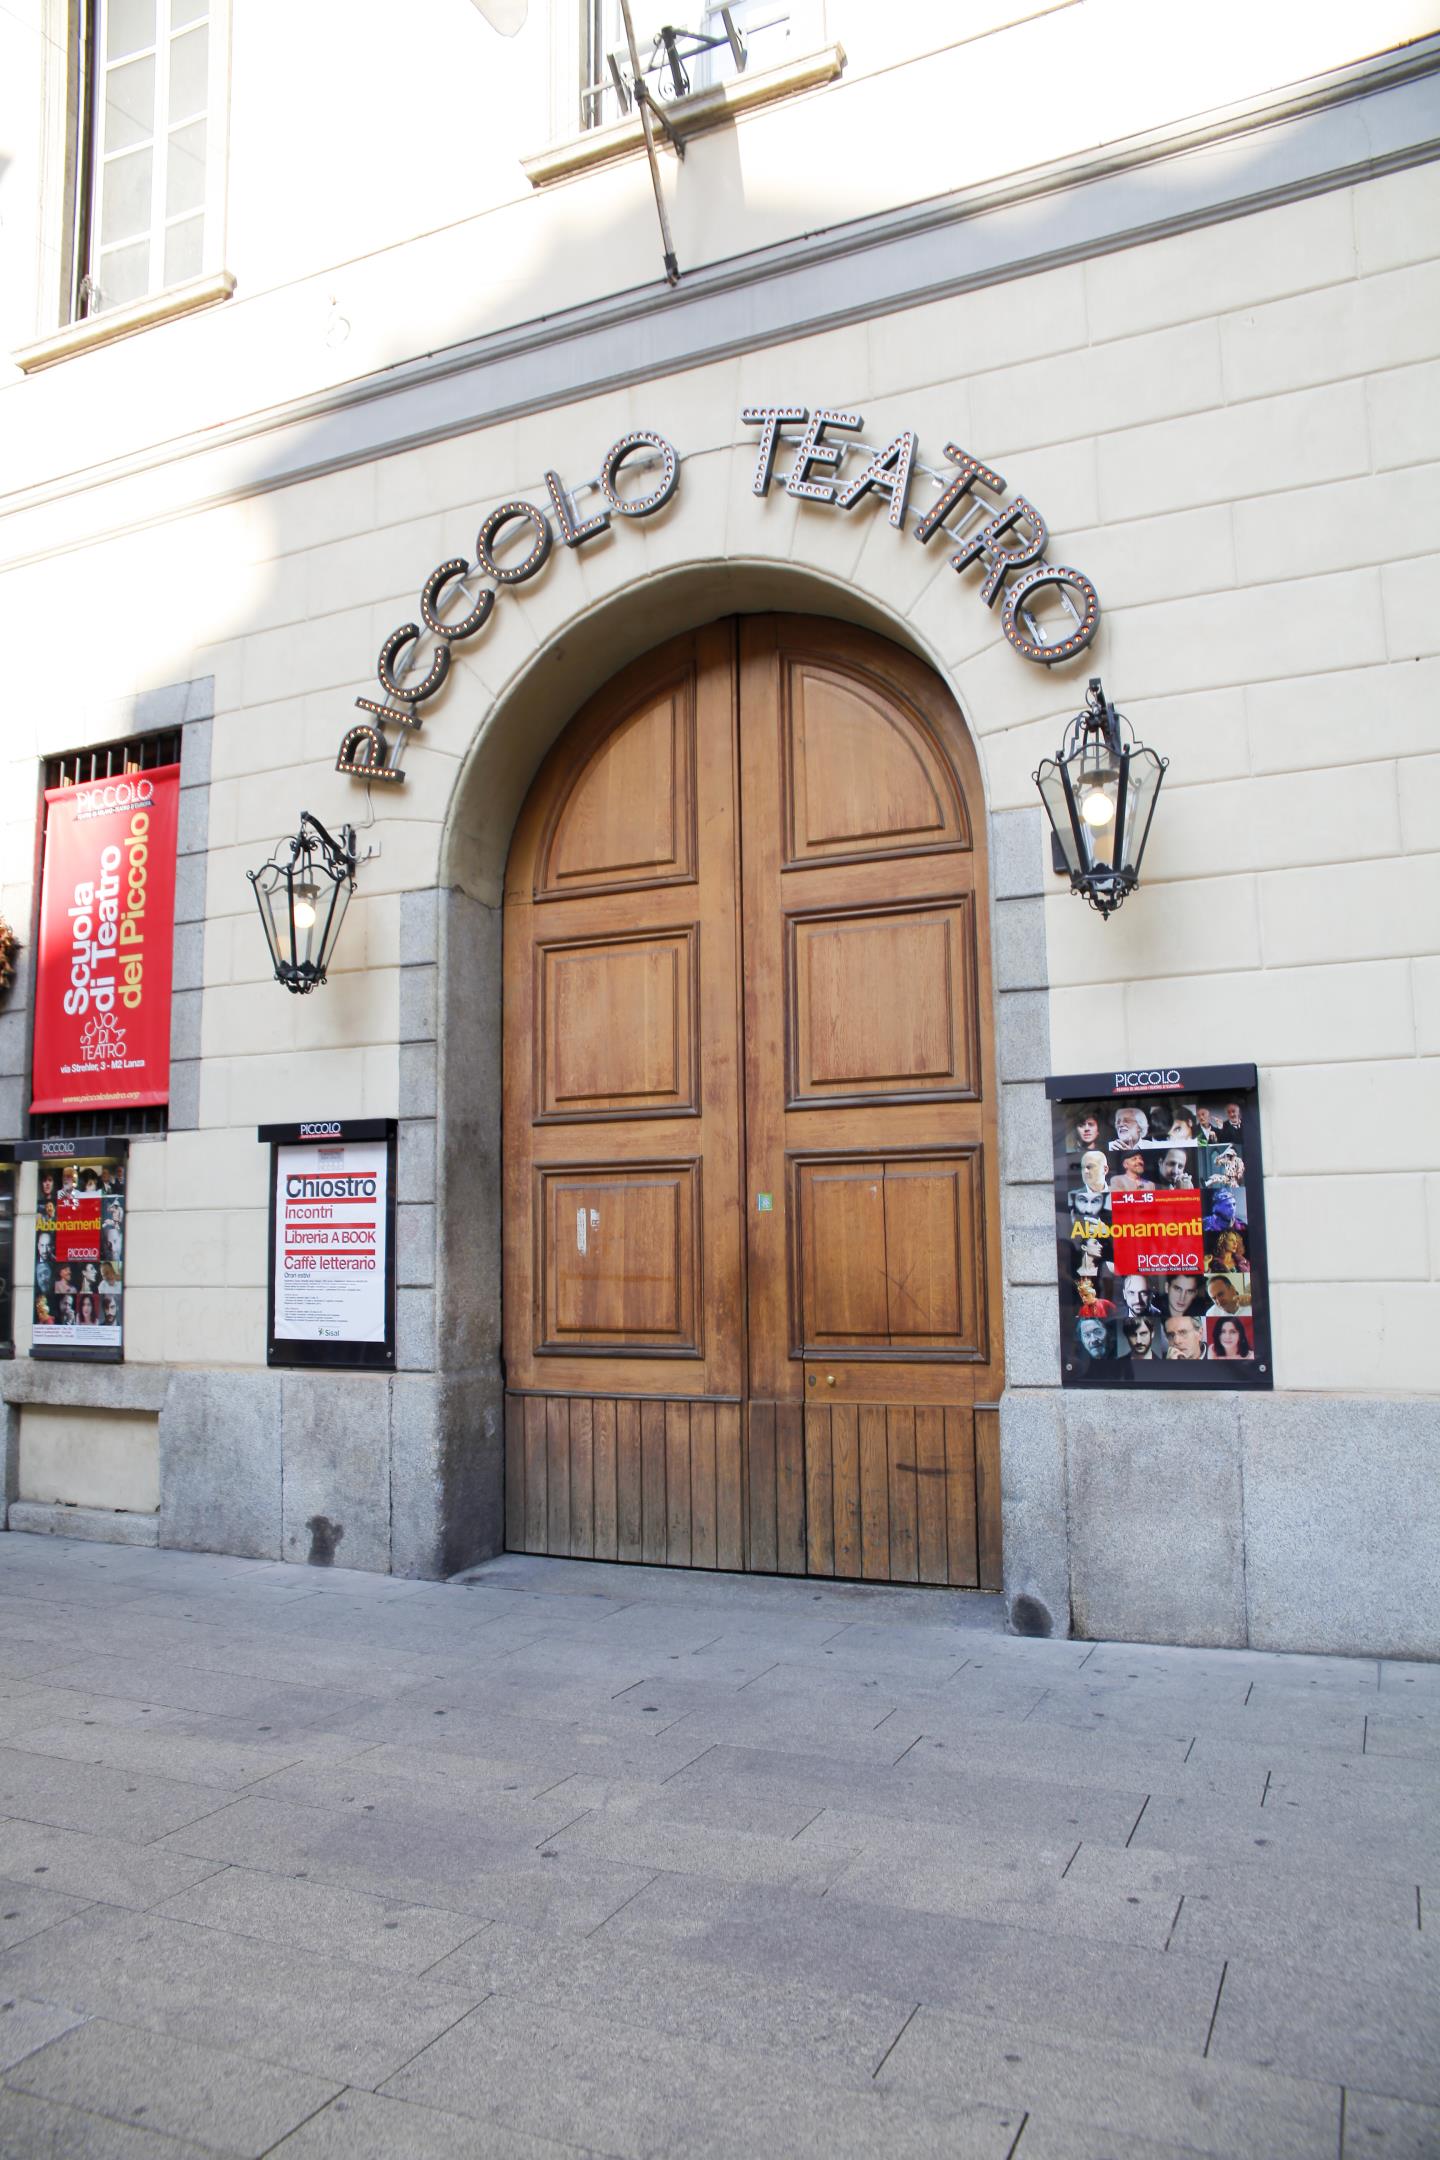 Piccolo Teatroと書かれた入口。ミラノ・ピッコロ座の劇場です。